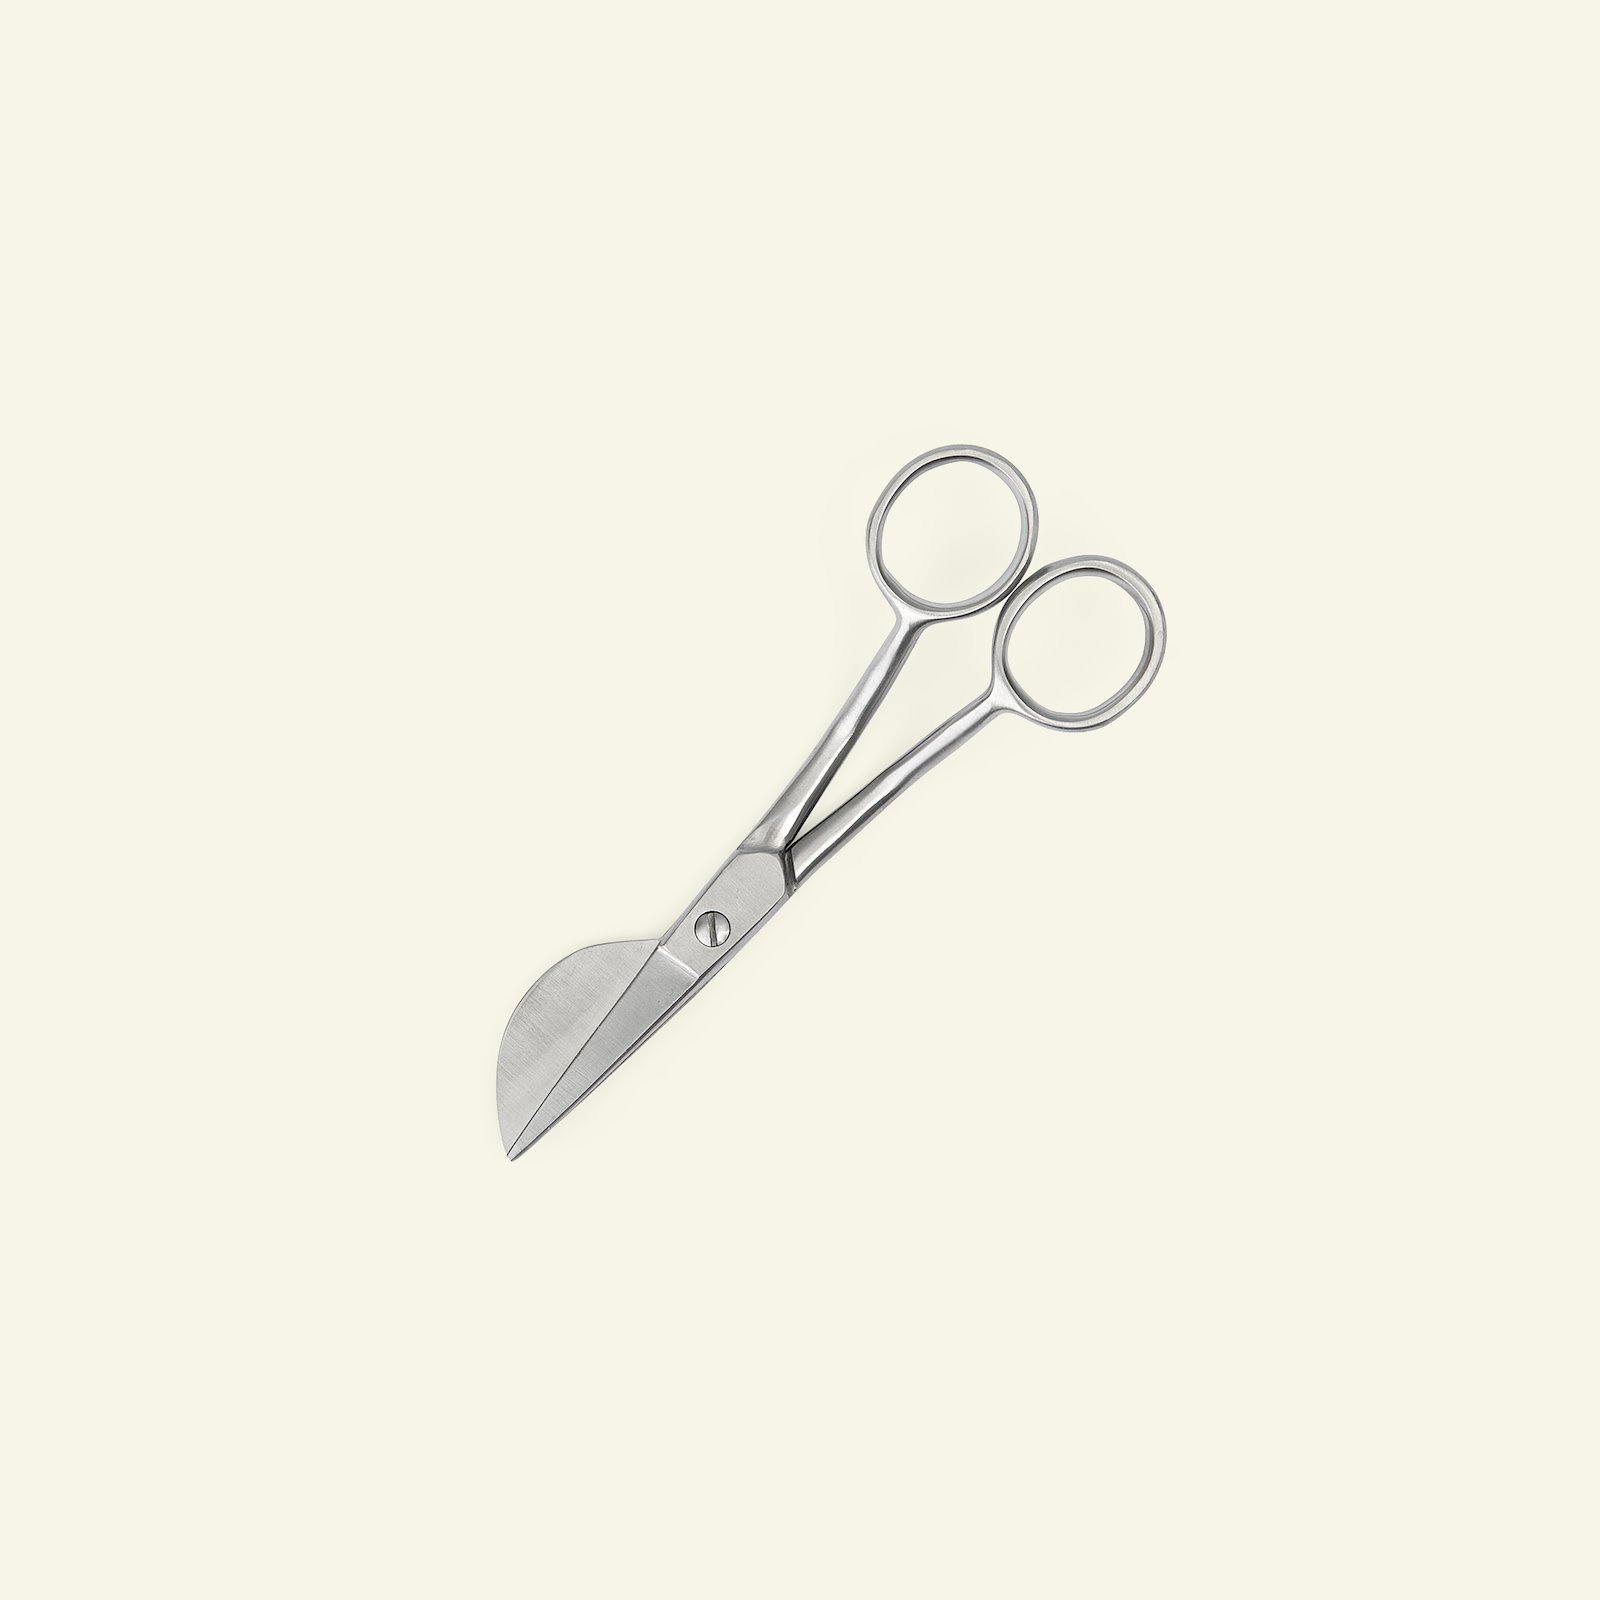 Applique scissors 15cm 42022_pack